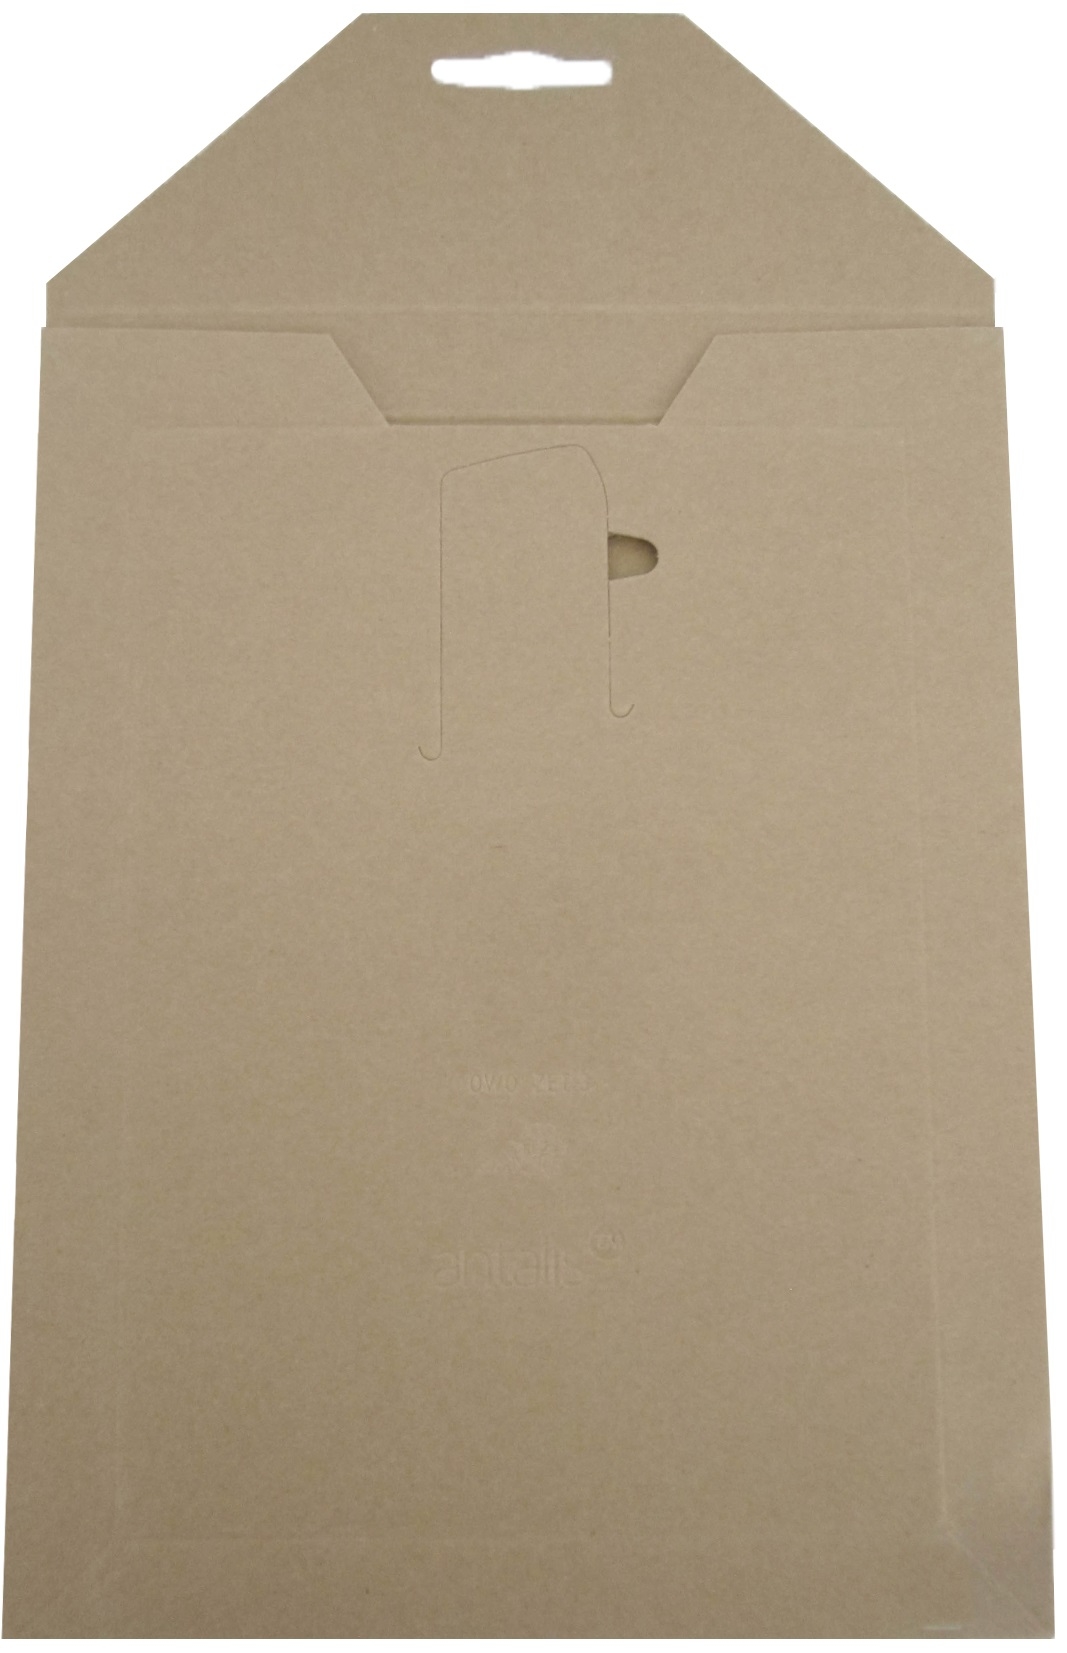 OWO-ZET Enveloppes Carton 4A 276226 250x350mm brun 50 pcs.